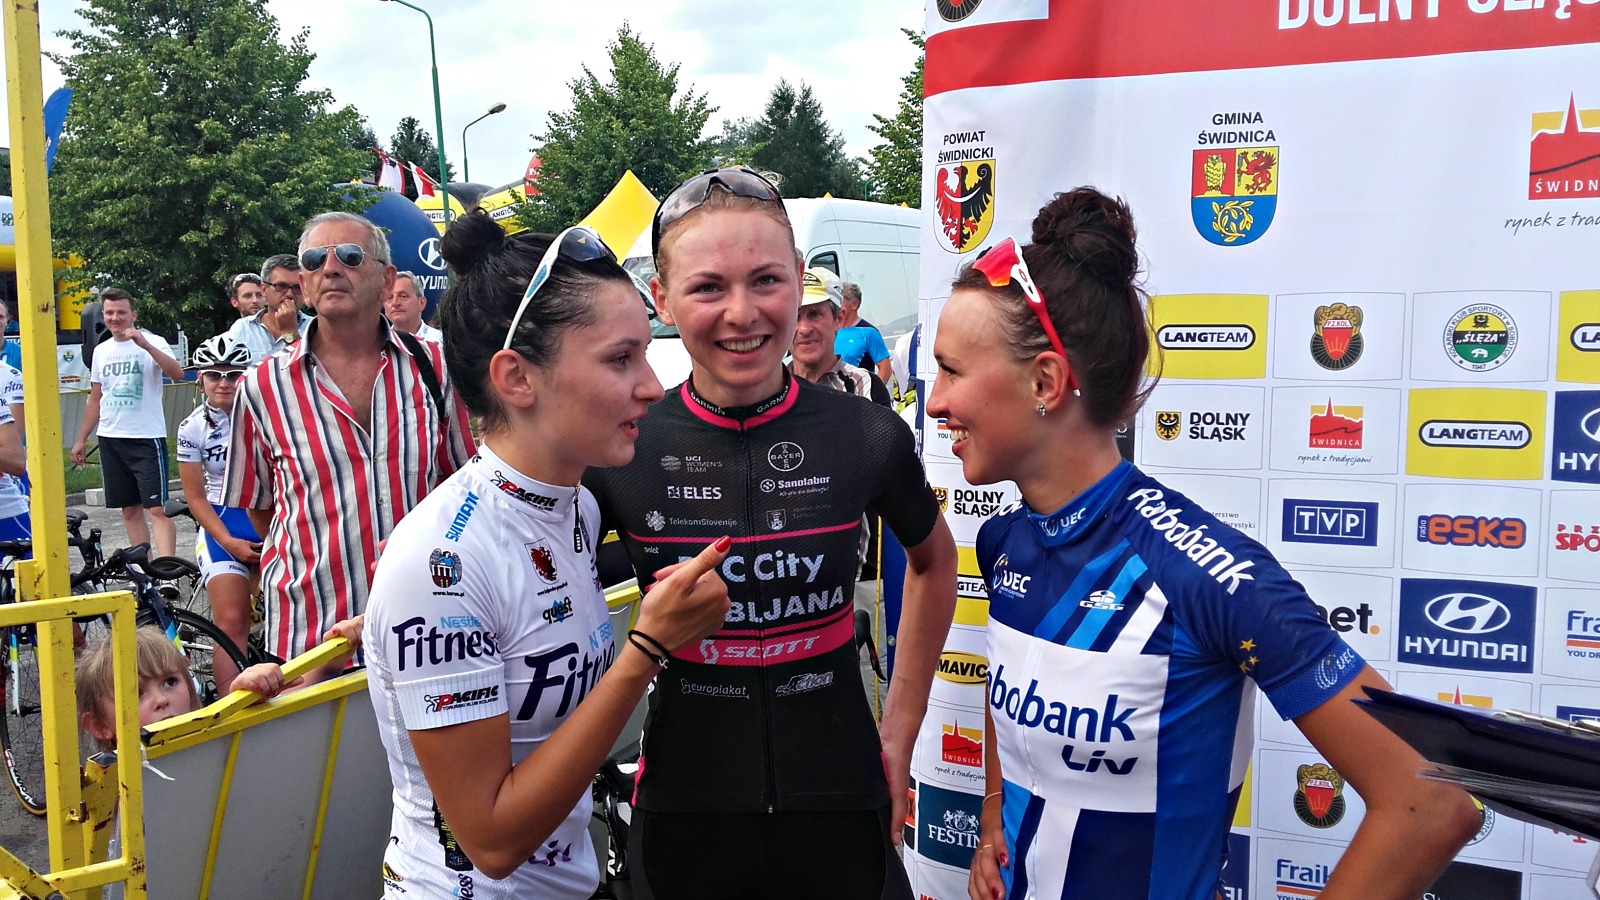 Tour de Feminin – O cenu Českého Švýcarska 2016: etap 5